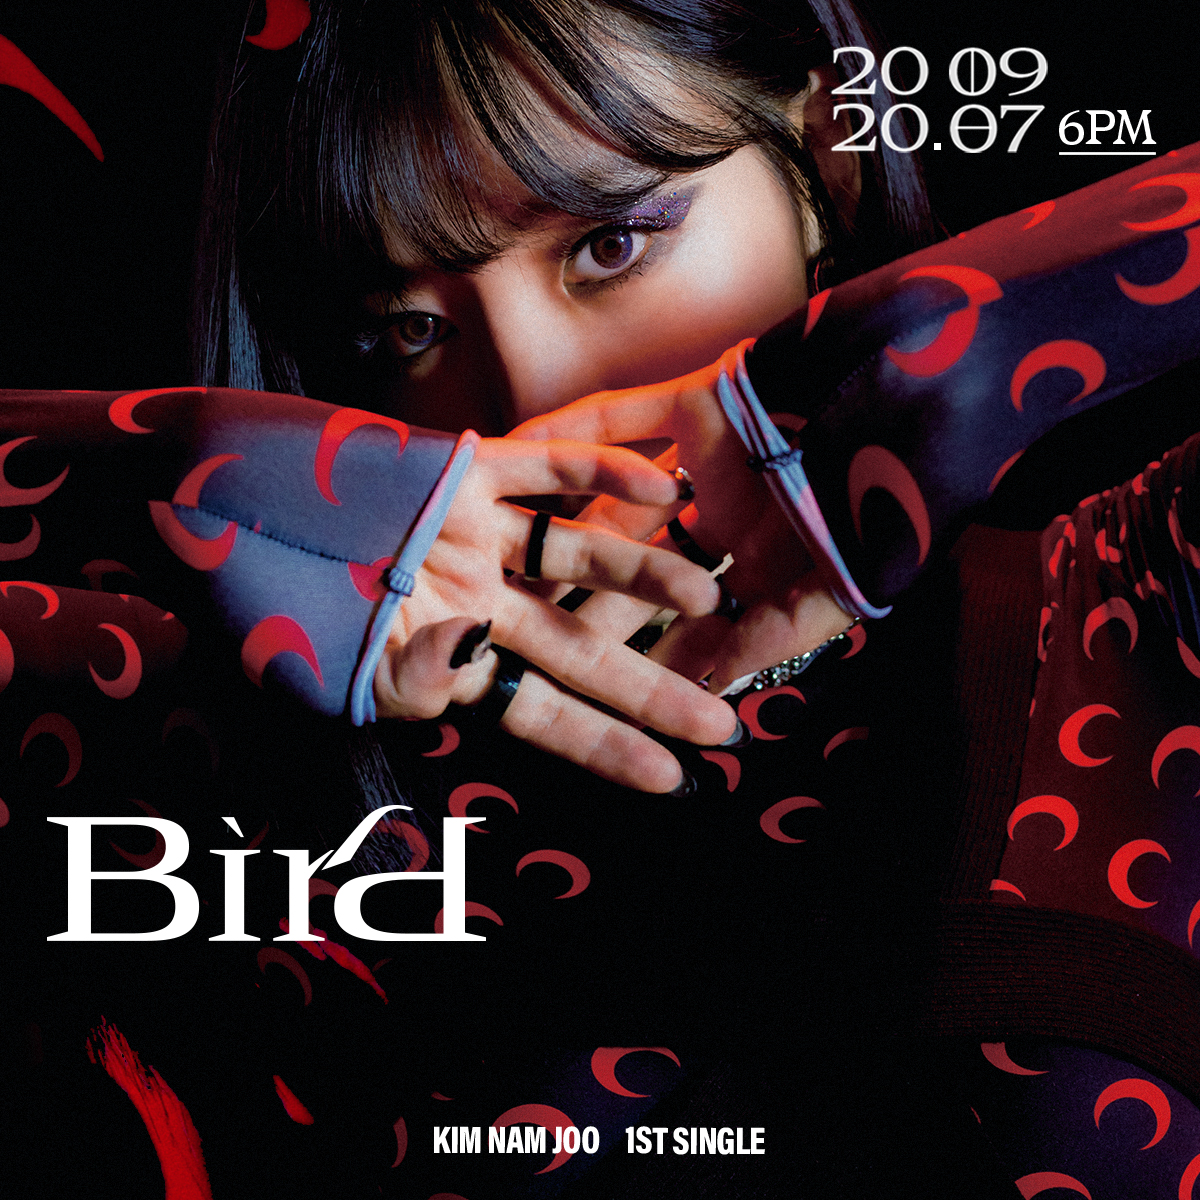 김남주 1st Single Album [Bird] Image Teaser 3